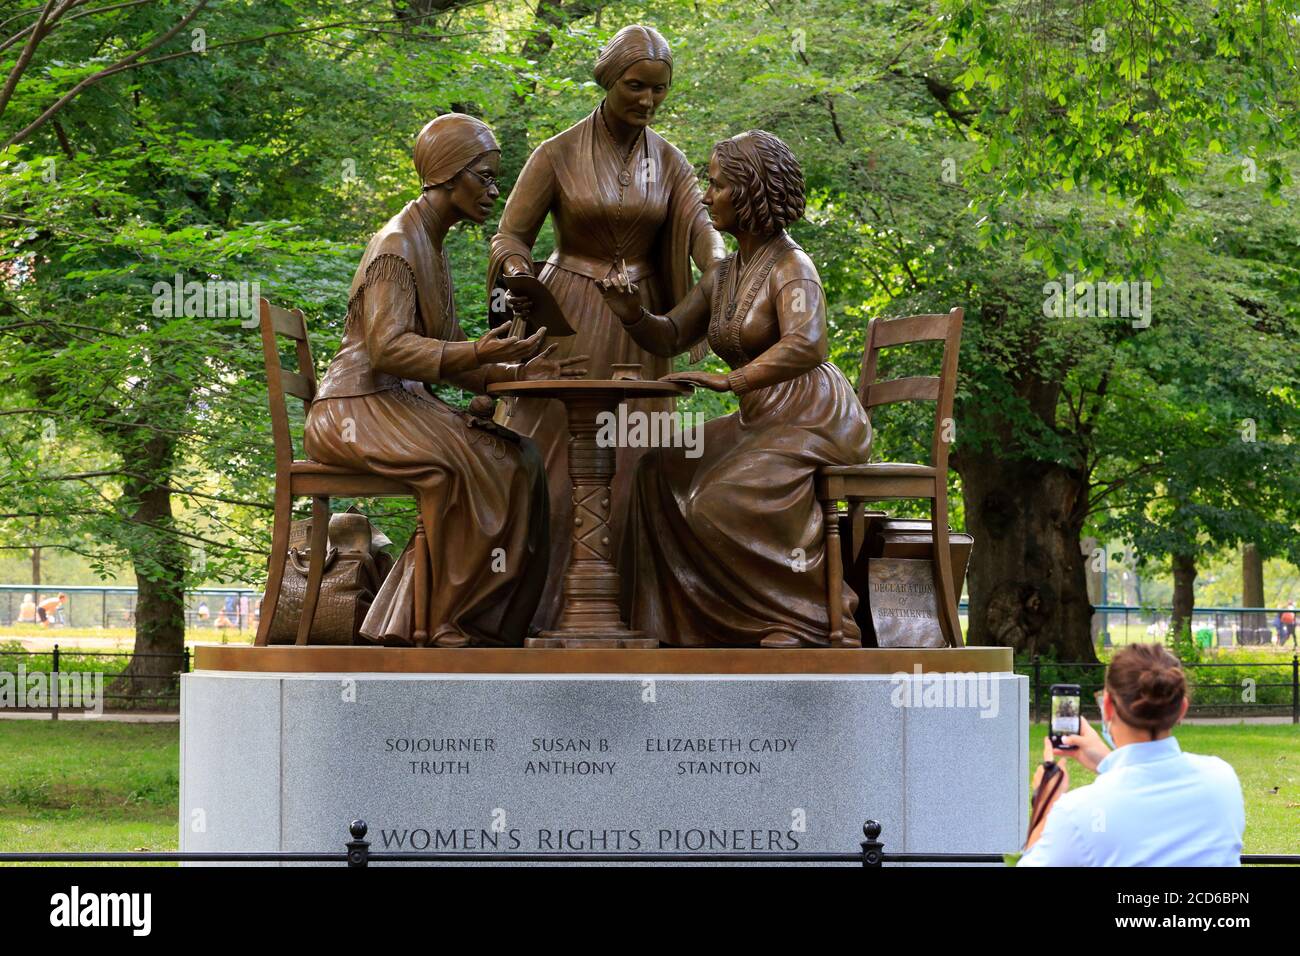 Eine Person nimmt ein Telefonfoto der Bronzestatue der 'Women’s Rights Pioneers' auf, einer Skulptur von Meredith Bergmann im Central Park, New York, NY. Stockfoto